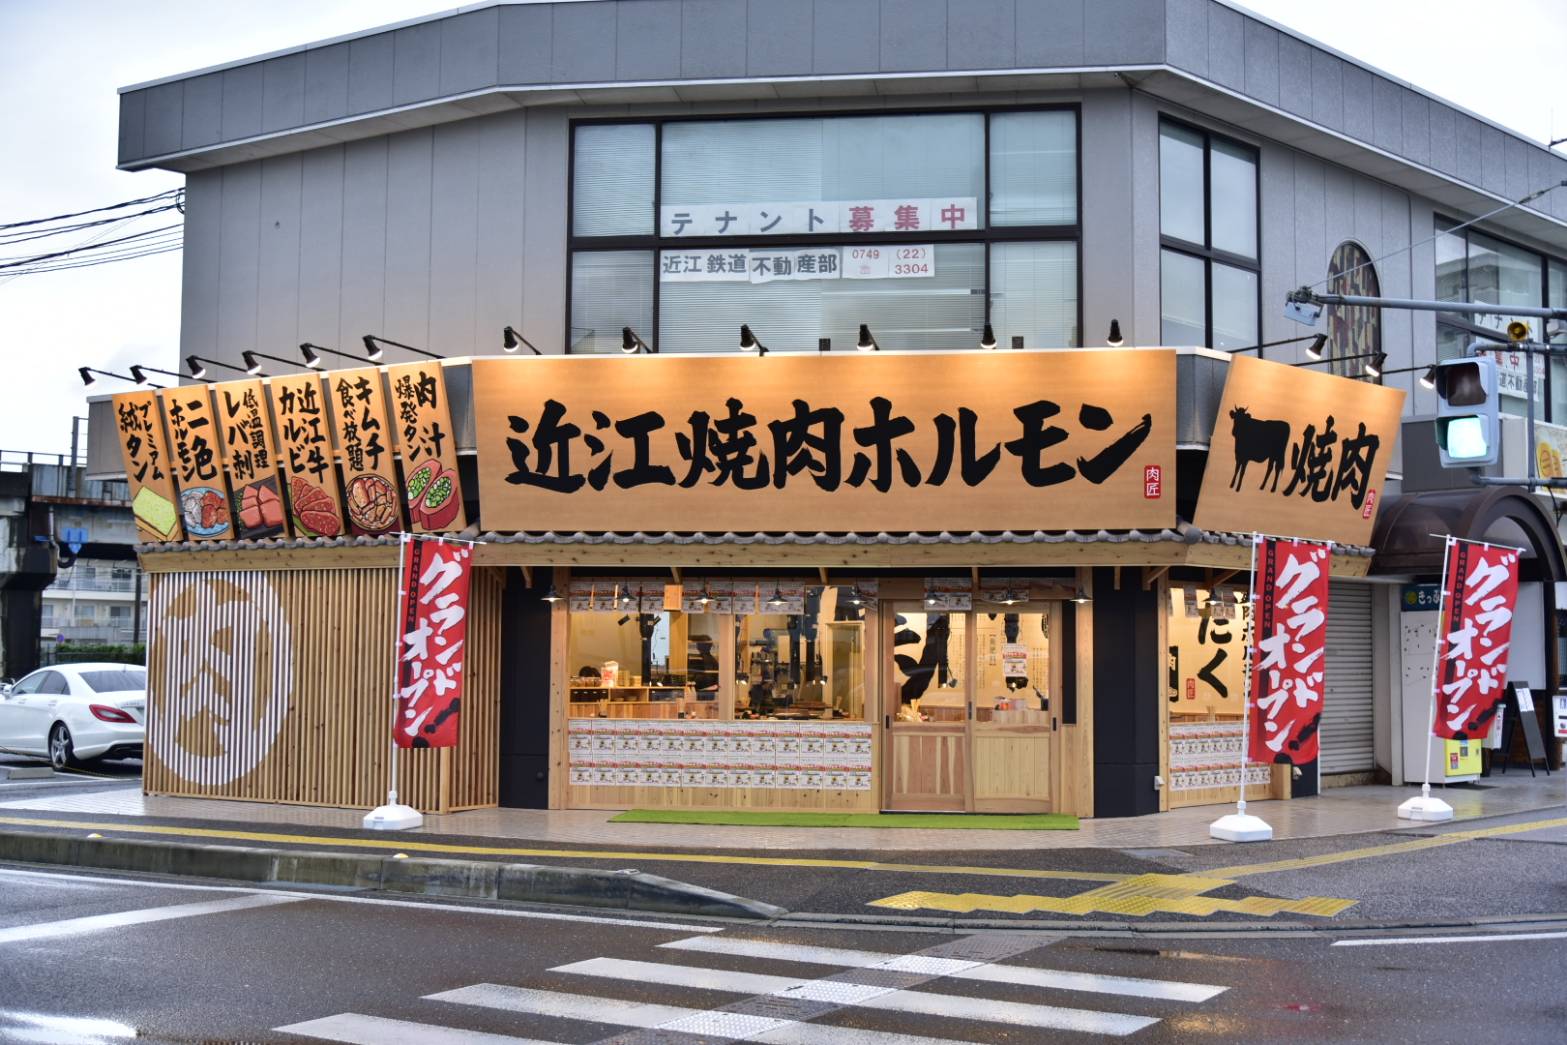 オープン初日から行列満席 大盛況となっている滋賀県彦根市の焼肉屋 近江焼肉ホルモンすだくのプレスリリース